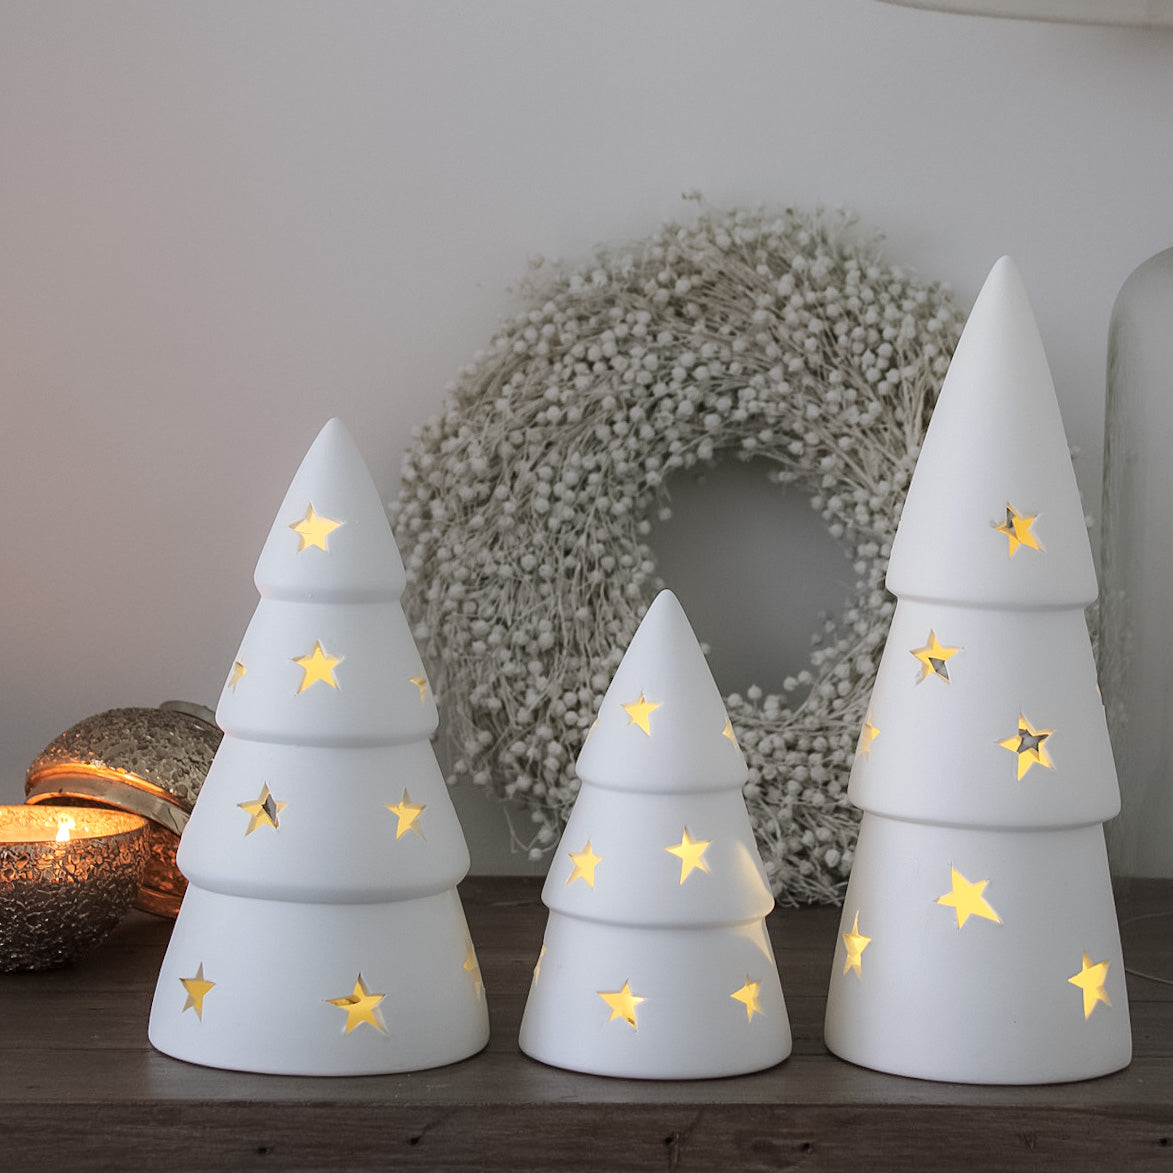 Star White Ceramic Christmas Tree